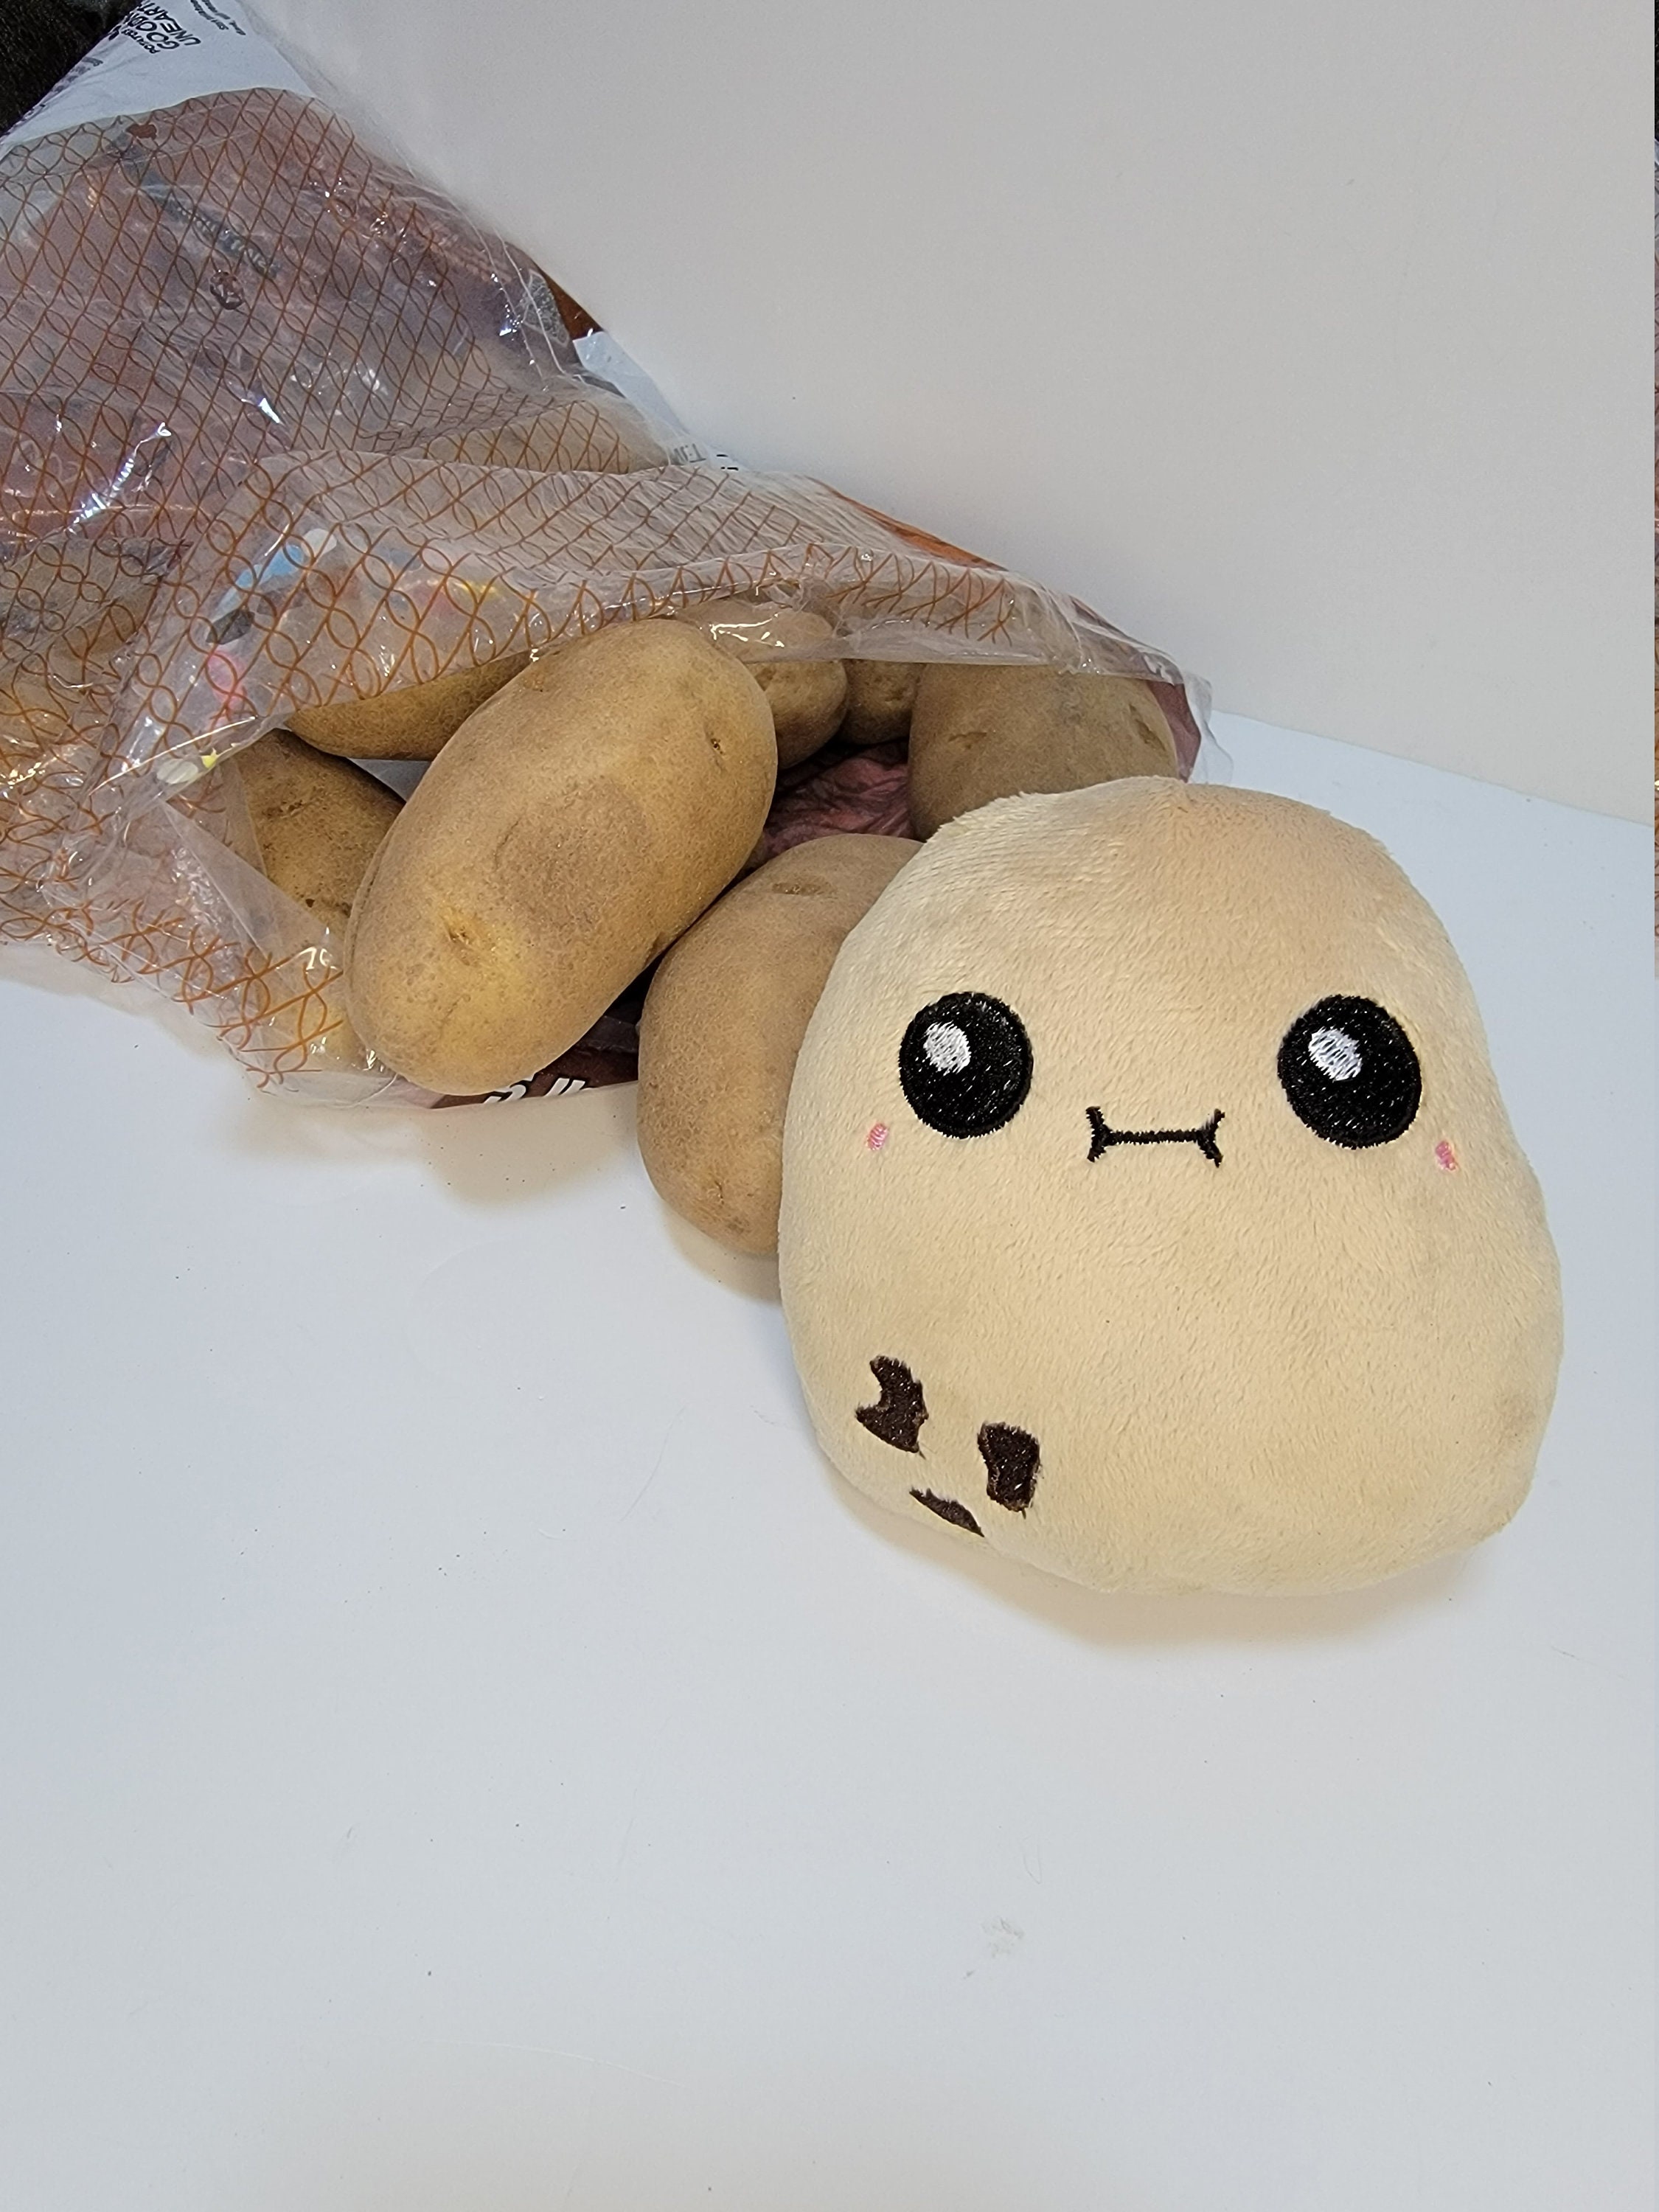 LuLezon Kawaii Potato Plush Soft Toy Comfort Food Stuffed Pillow